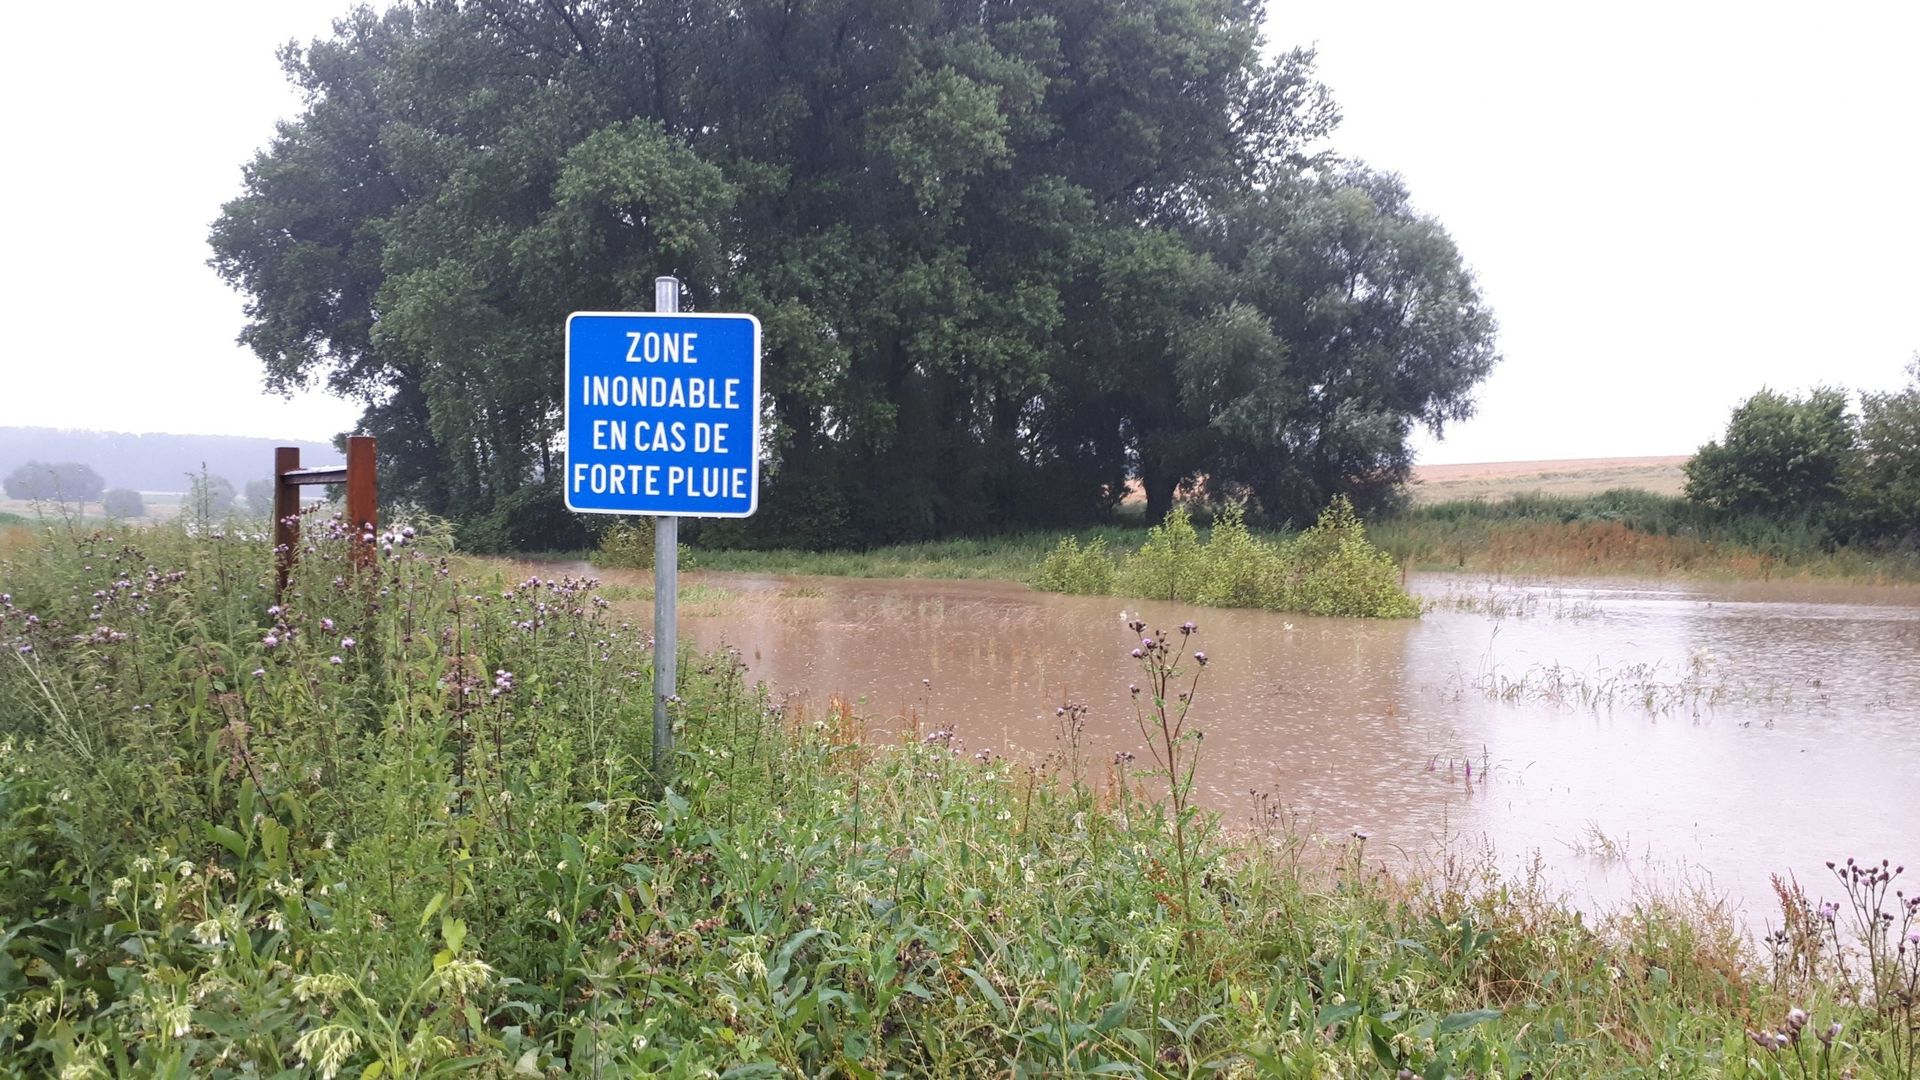 La commune de Soignies a connu de nombreux épisodes d’inondations